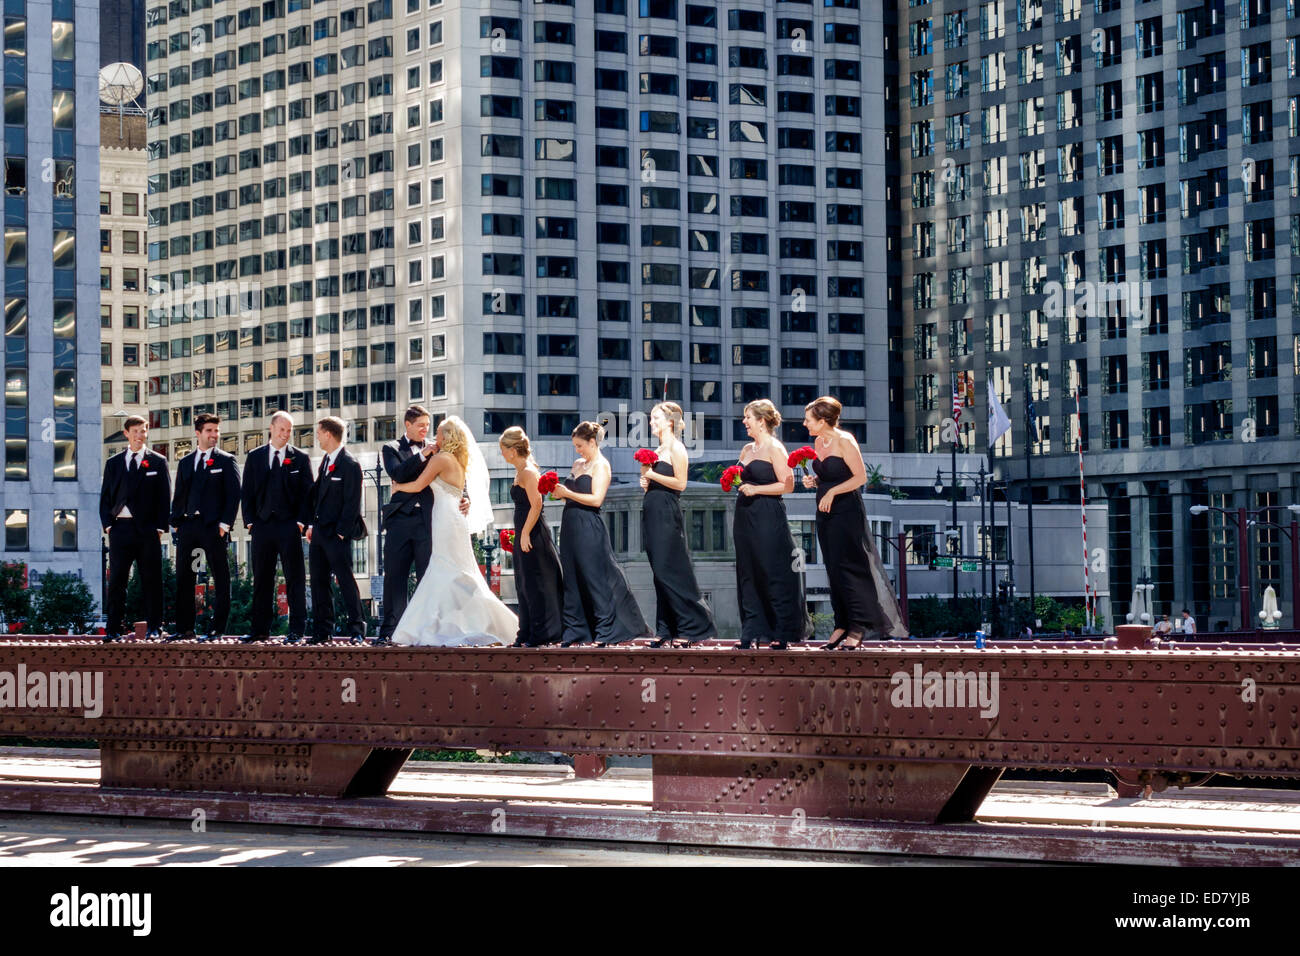 Chicago Illinois,North Wabash Avenue Bridge,mariage party,marié,mariée,groommen,bridesmaid,posant,centre-ville,gratte-ciel,bâtiments,IL140906129 Banque D'Images